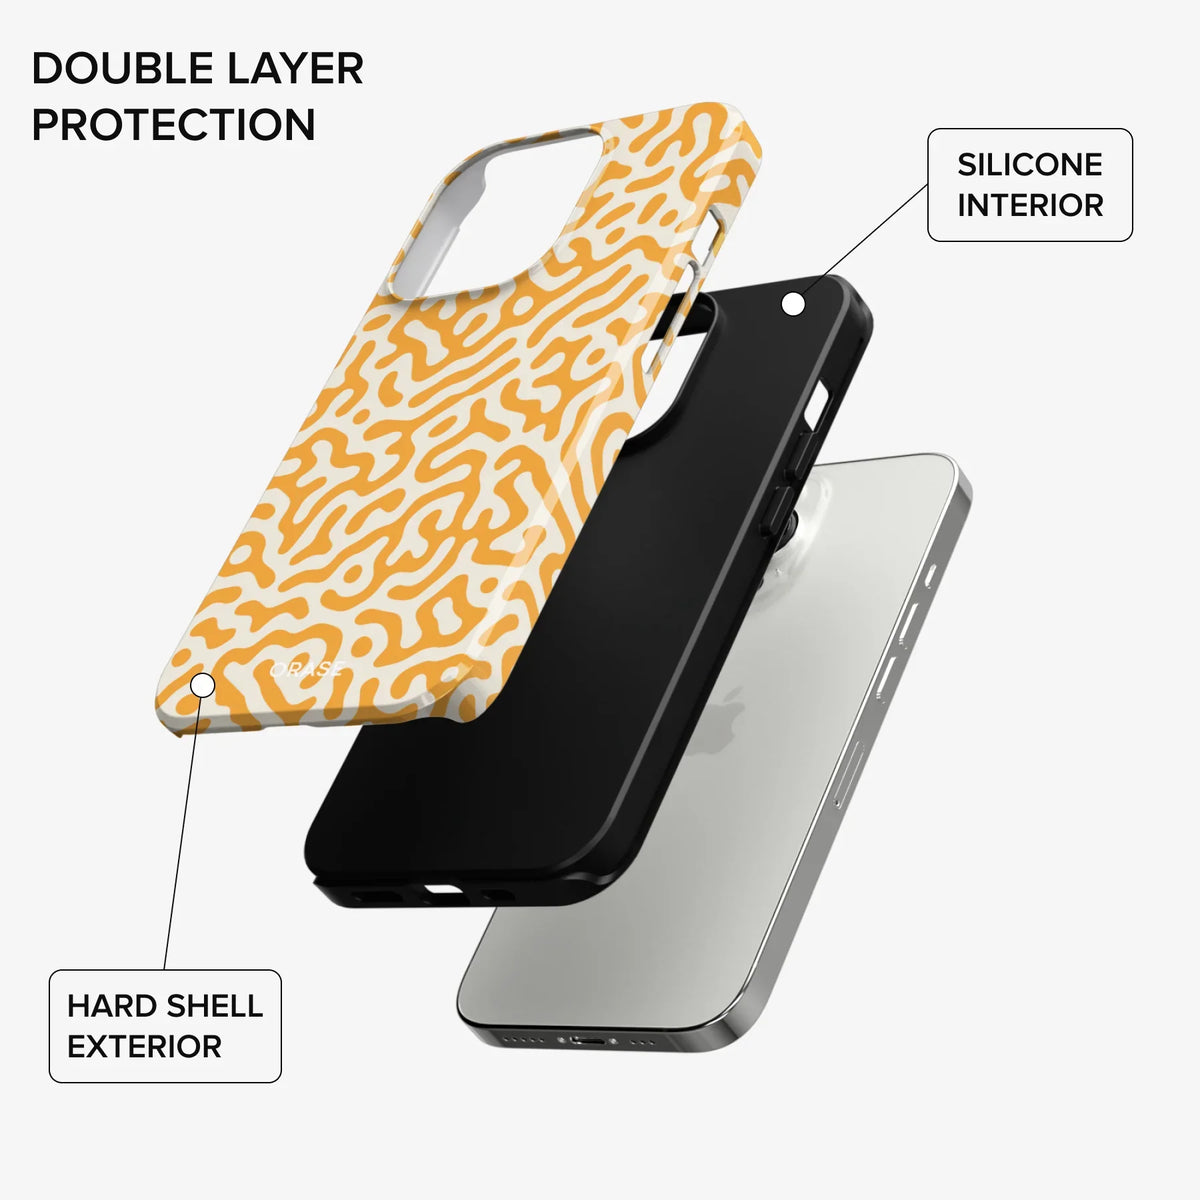 Lune Orange iPhone Case - iPhone 14 Pro Max